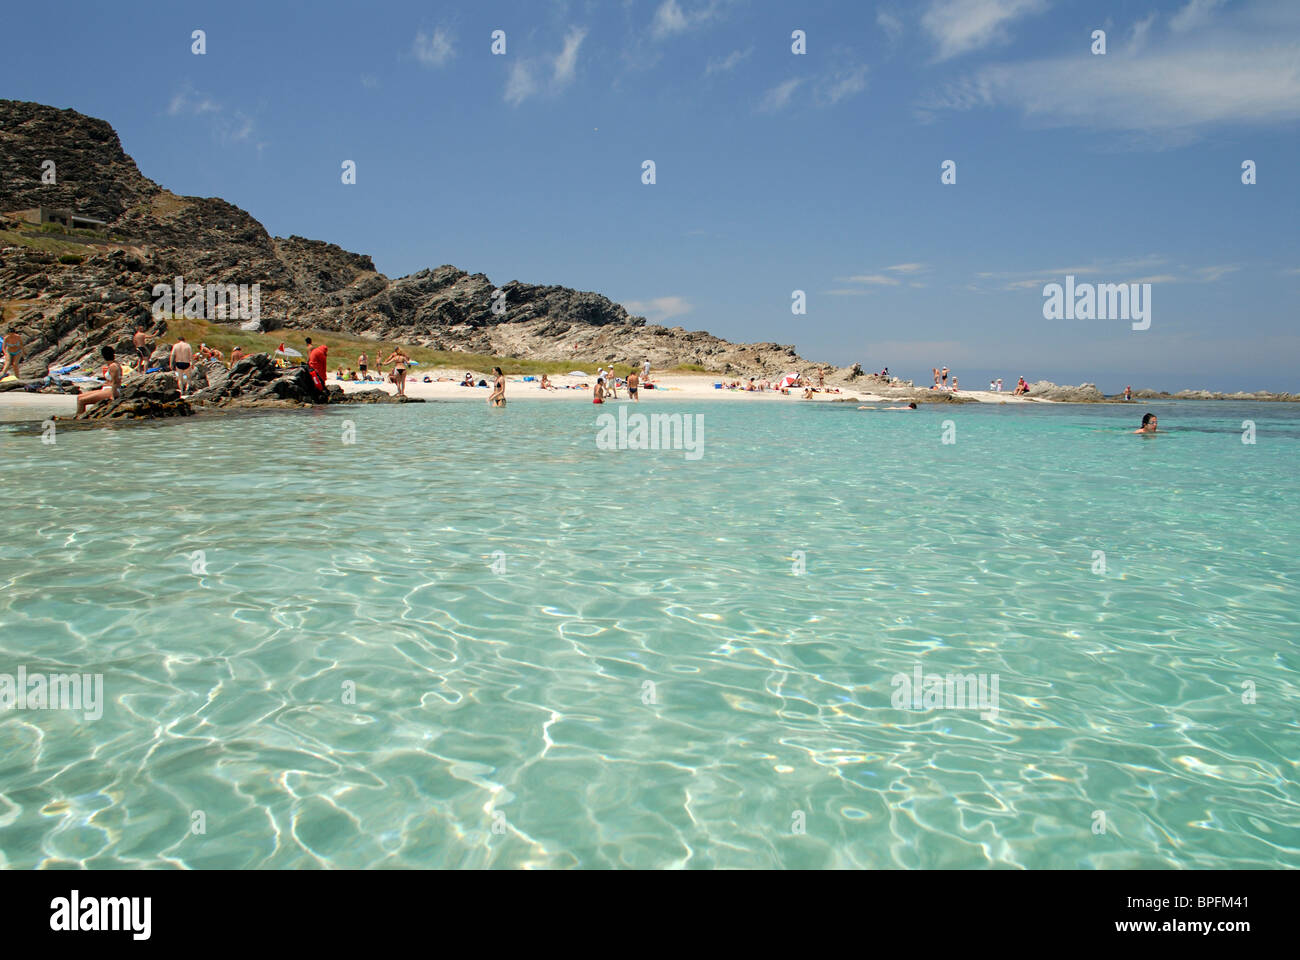 Spiaggia della Pelosa, Sardinia, Italy Stock Photo